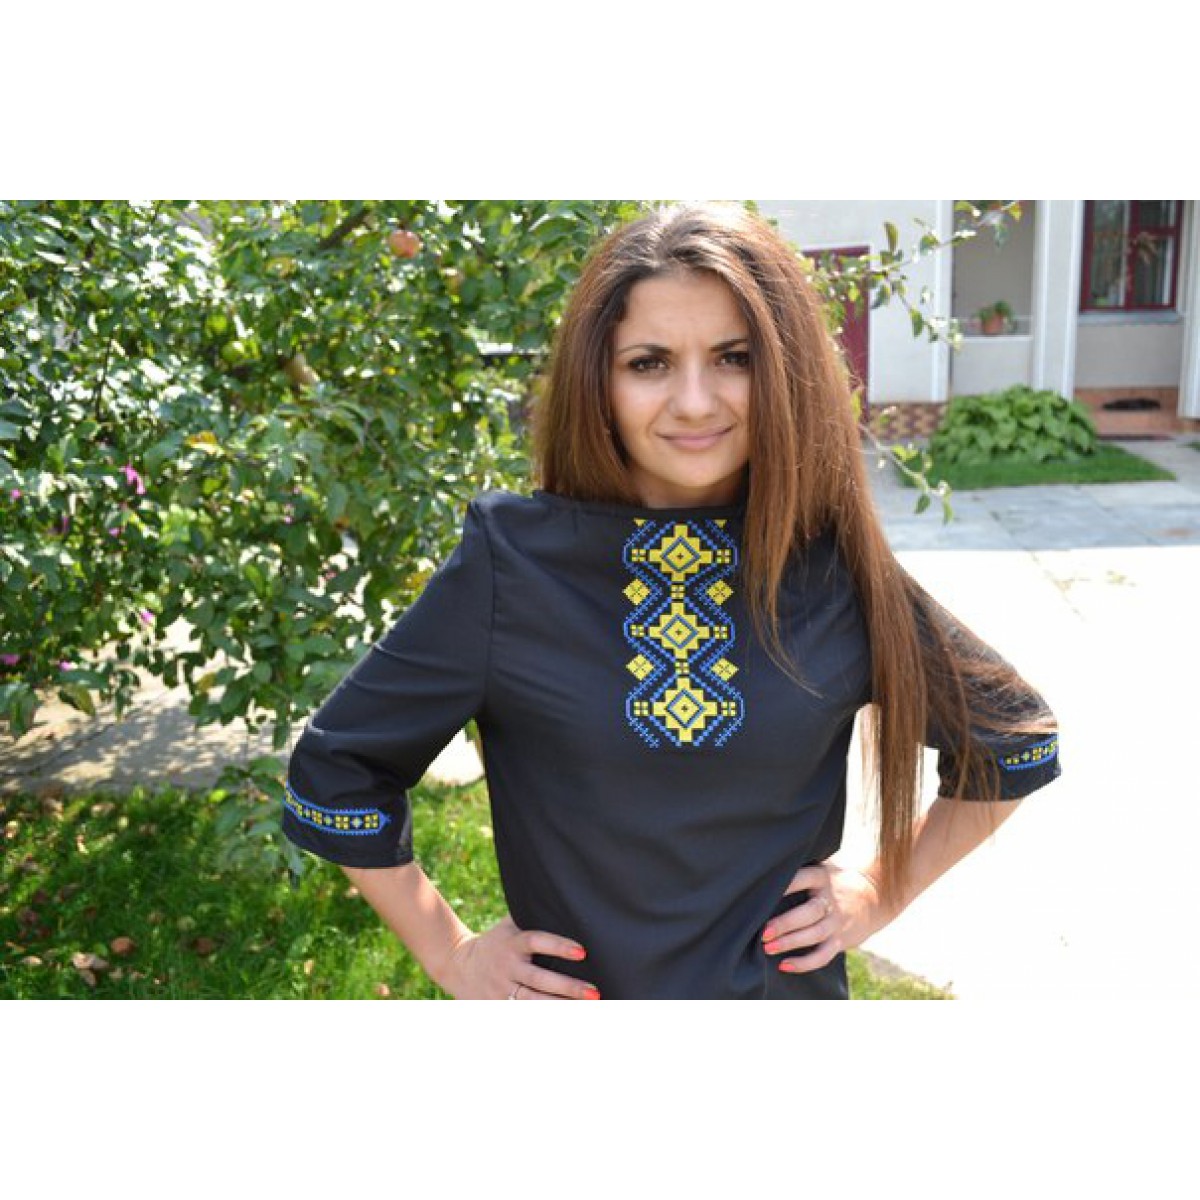 Embroidered shirt, embroidered t-shirt, ukrainian t-shirt, ukrainian ...